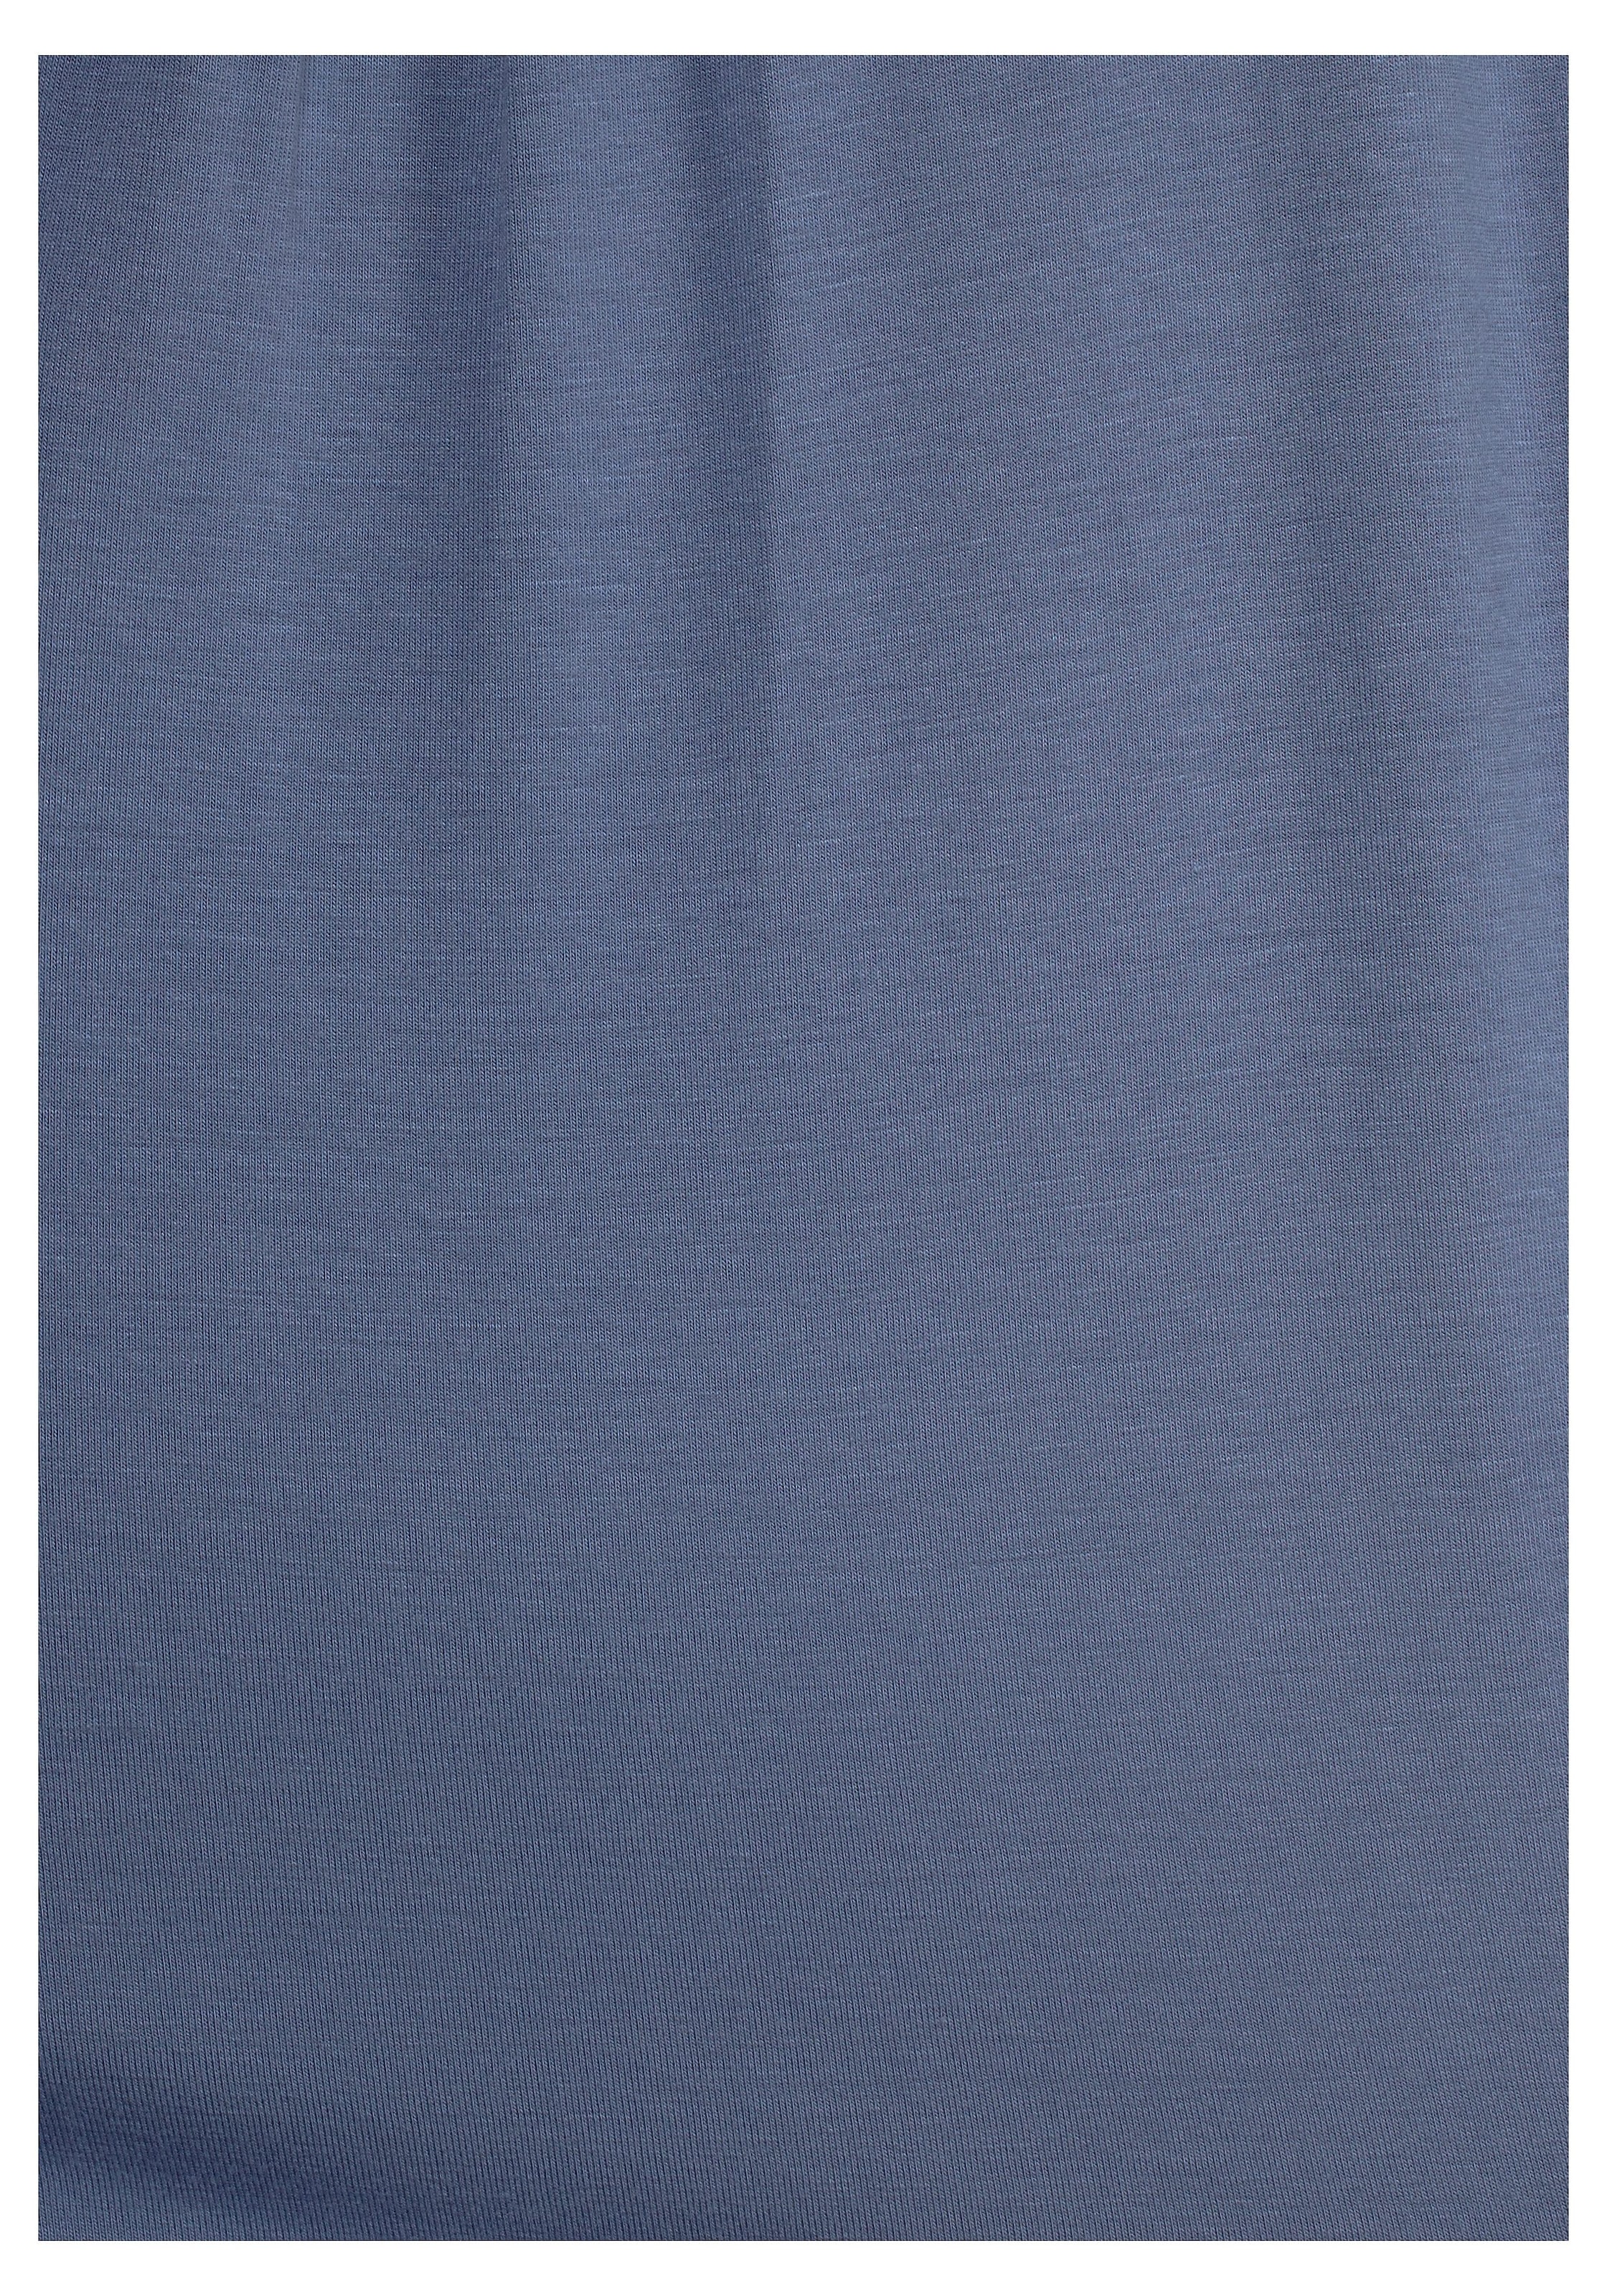 LASCANA Strandshirt, mit Häkeleinsatz am Rücken, T-Shirt, weite Passform, luftig und locker